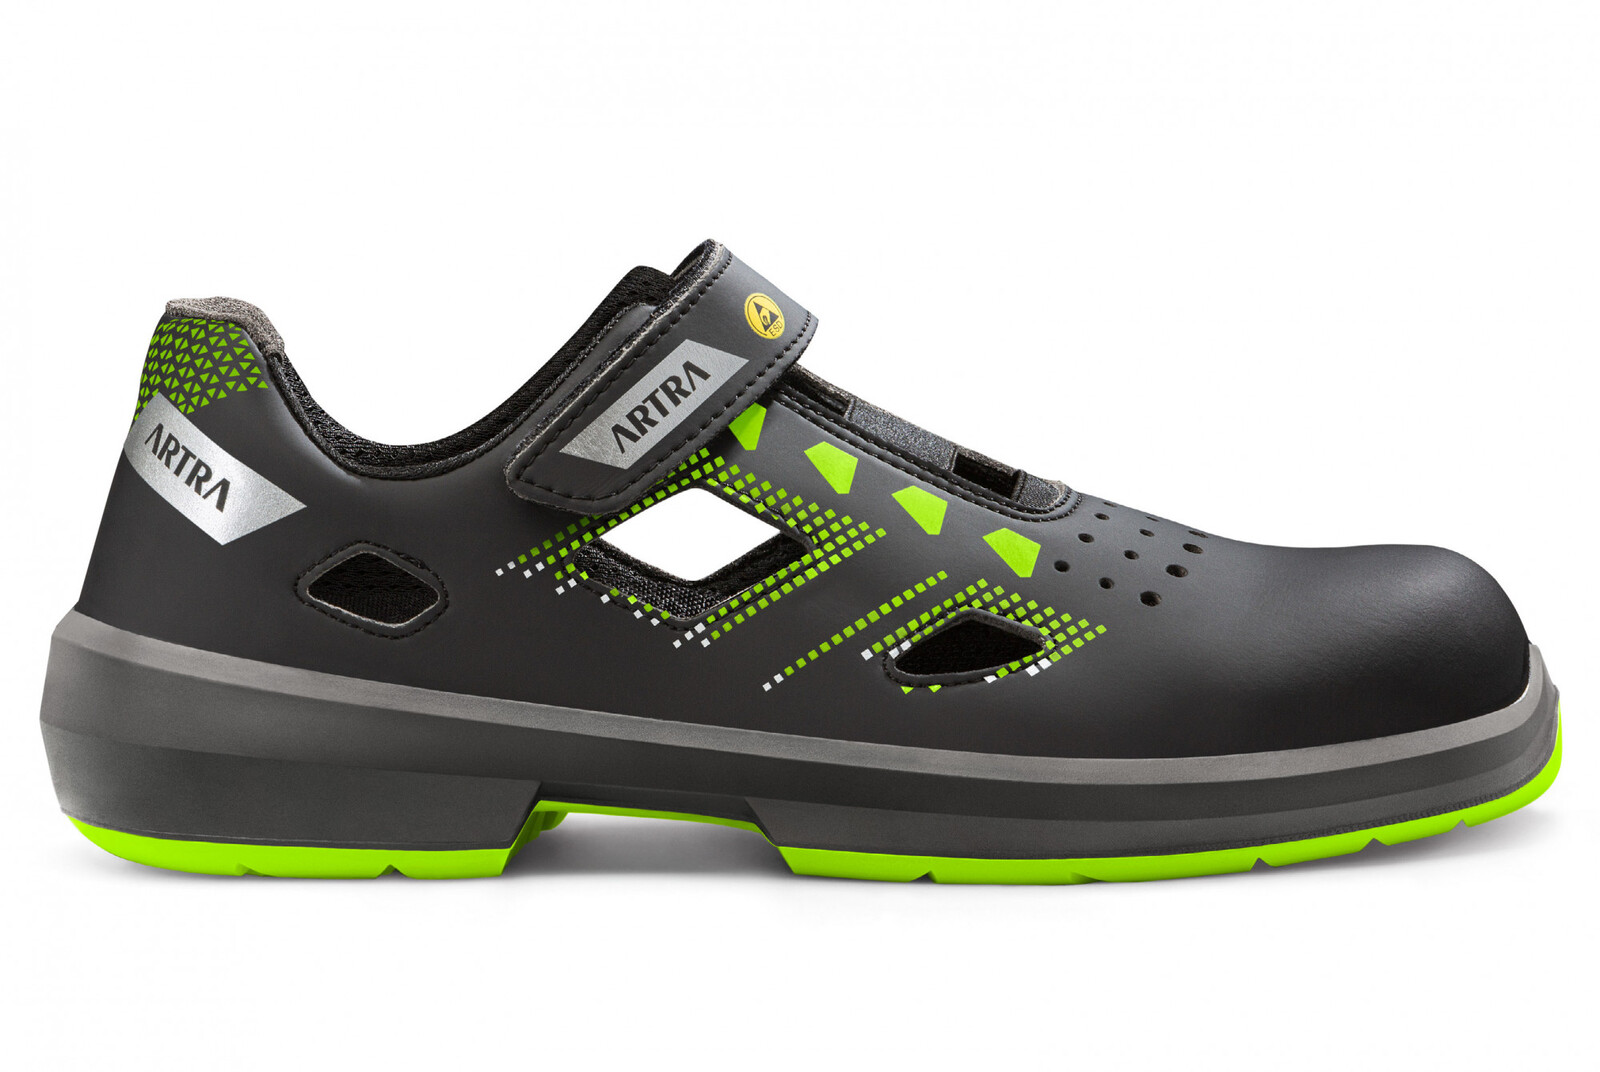 Bezpečnostné sandále Artra Arzo 805 678080 S1 SRC ESD MF - veľkosť: 39, farba: čierna/zelená